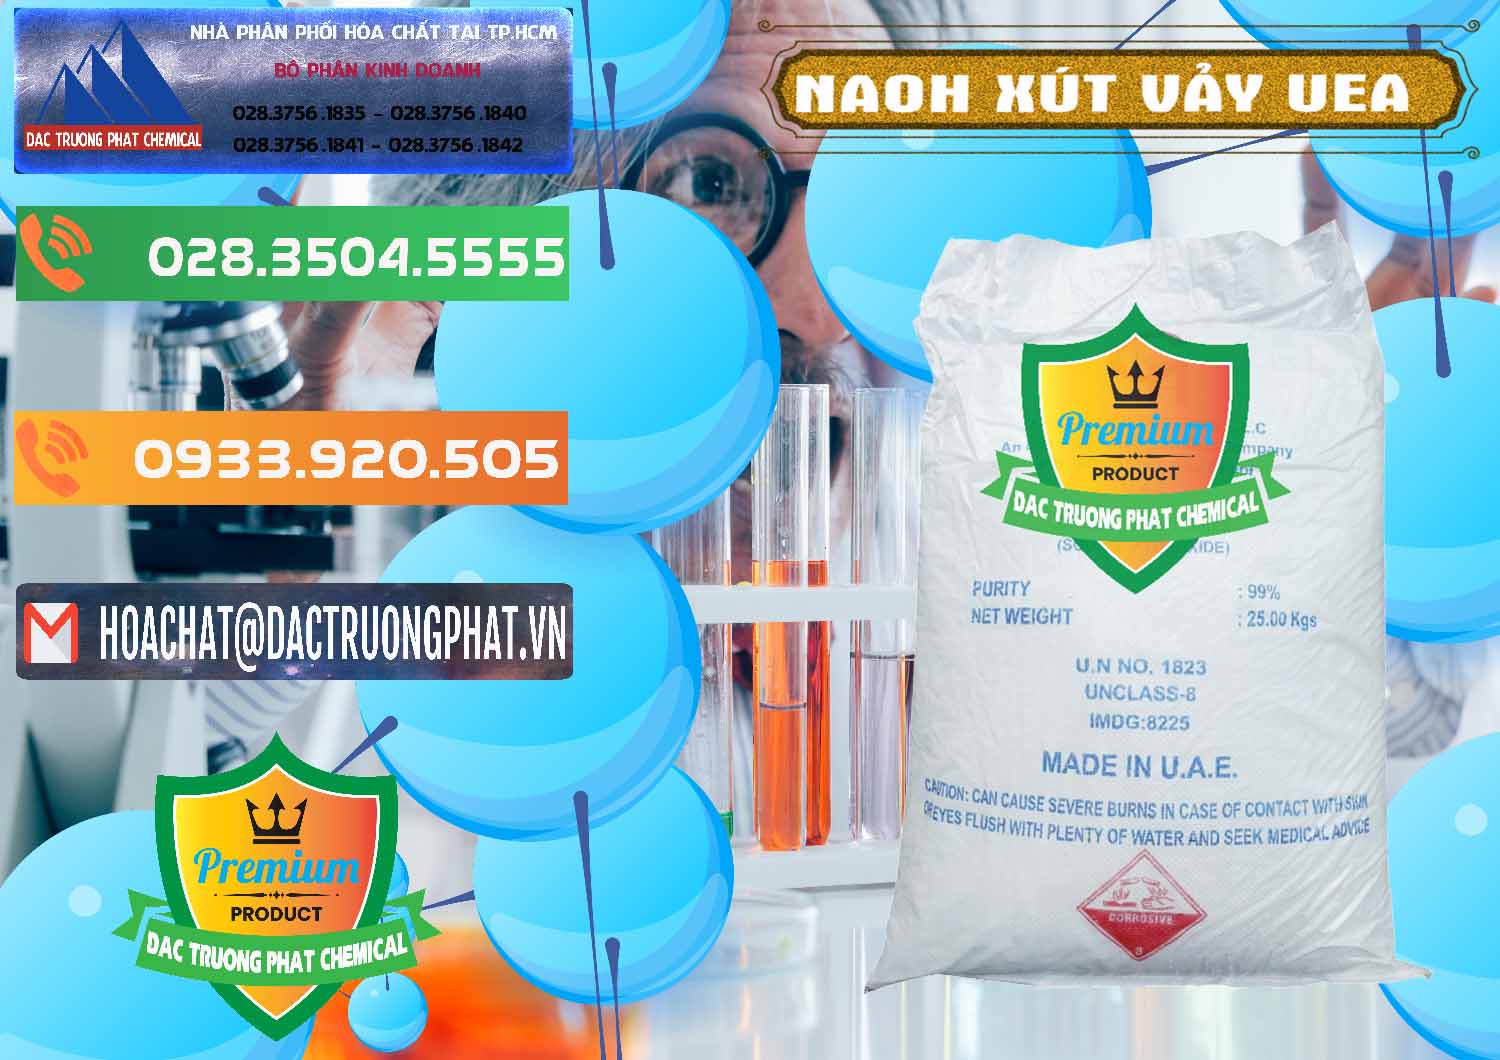 Công ty kinh doanh & bán Xút Vảy - NaOH Vảy UAE Iran - 0432 - Cty chuyên phân phối _ bán hóa chất tại TP.HCM - hoachatxulynuoc.com.vn